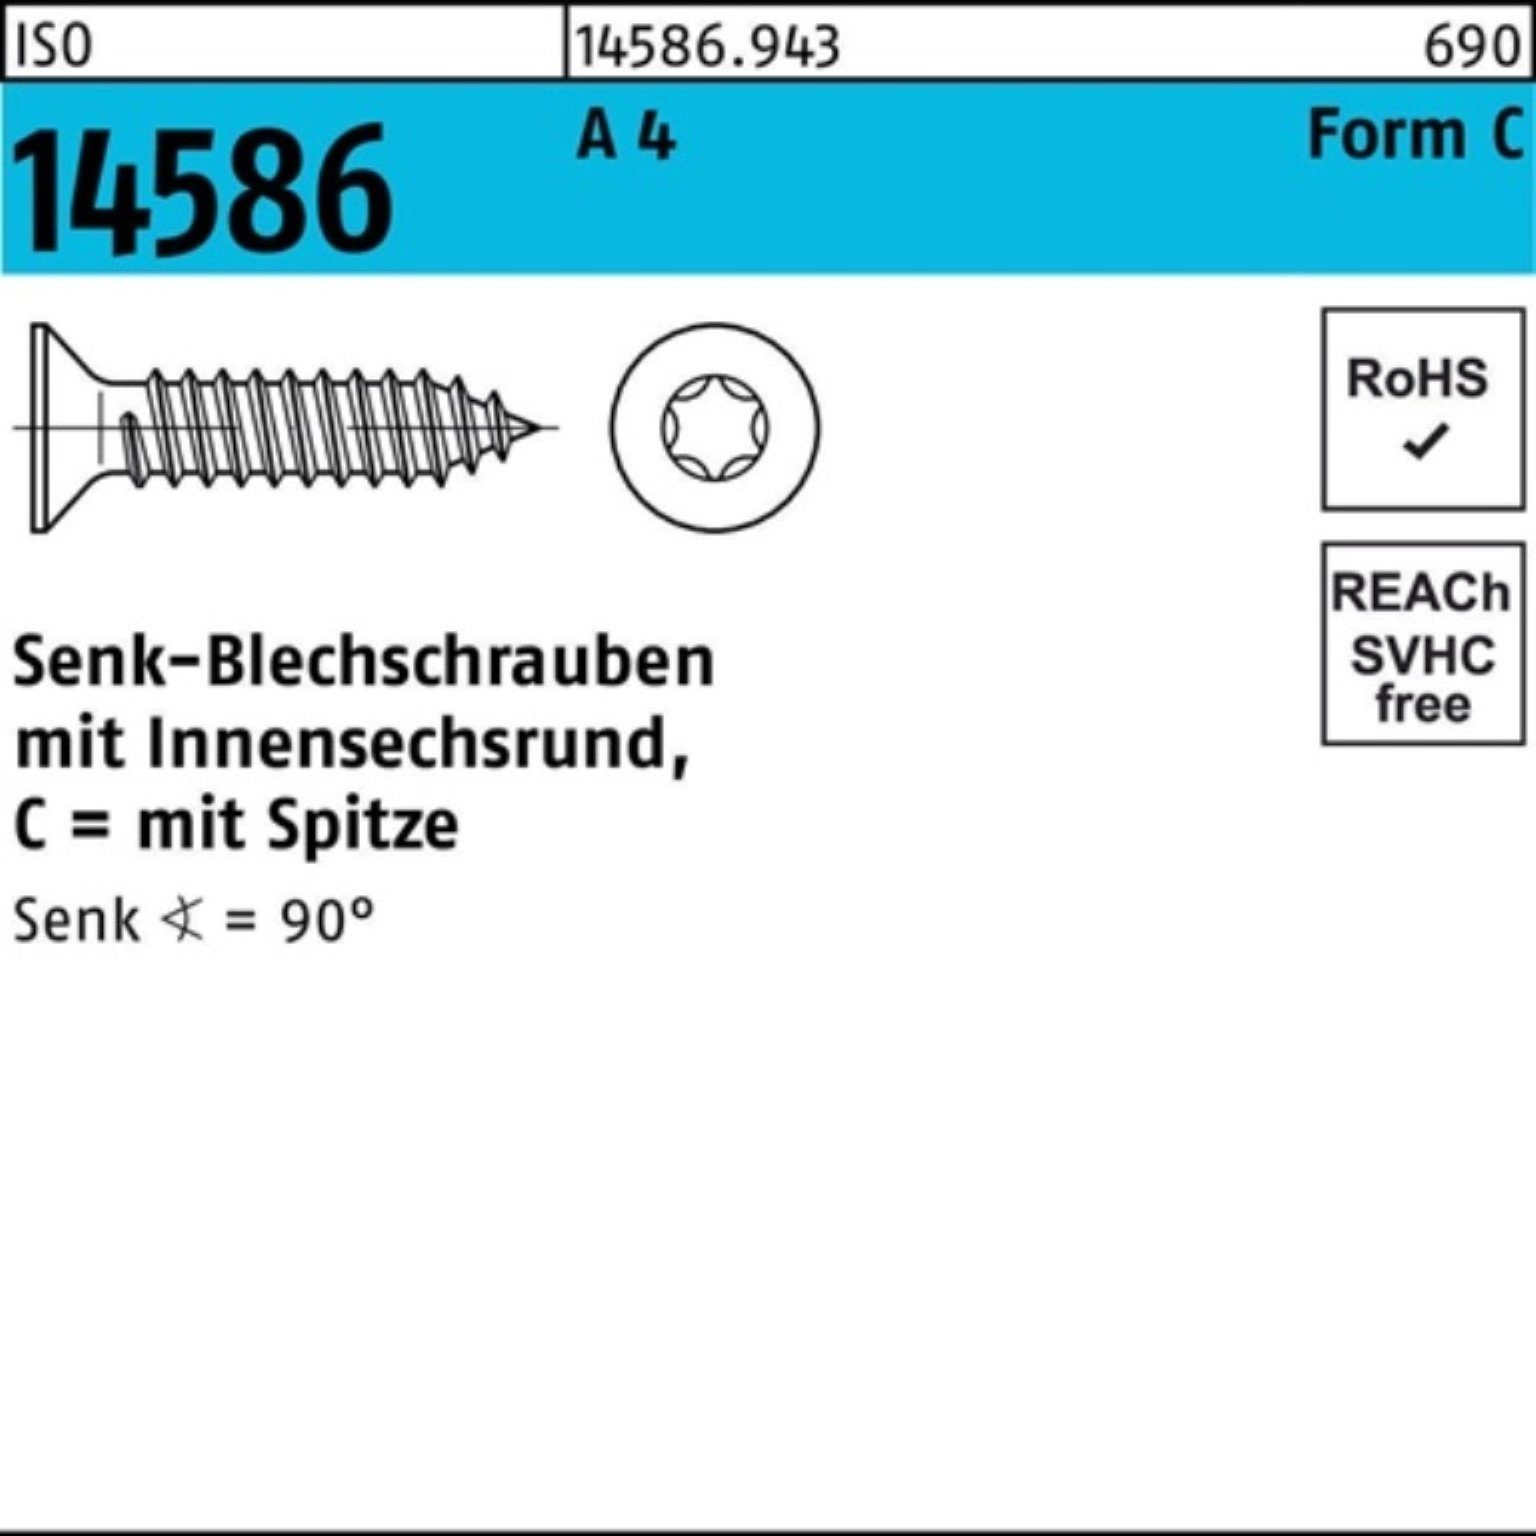 Reyher Schraube 500er Pack Senkblechschraube ISO 14586 ISR/Spitze 6,3x 22-T30 A 4 500